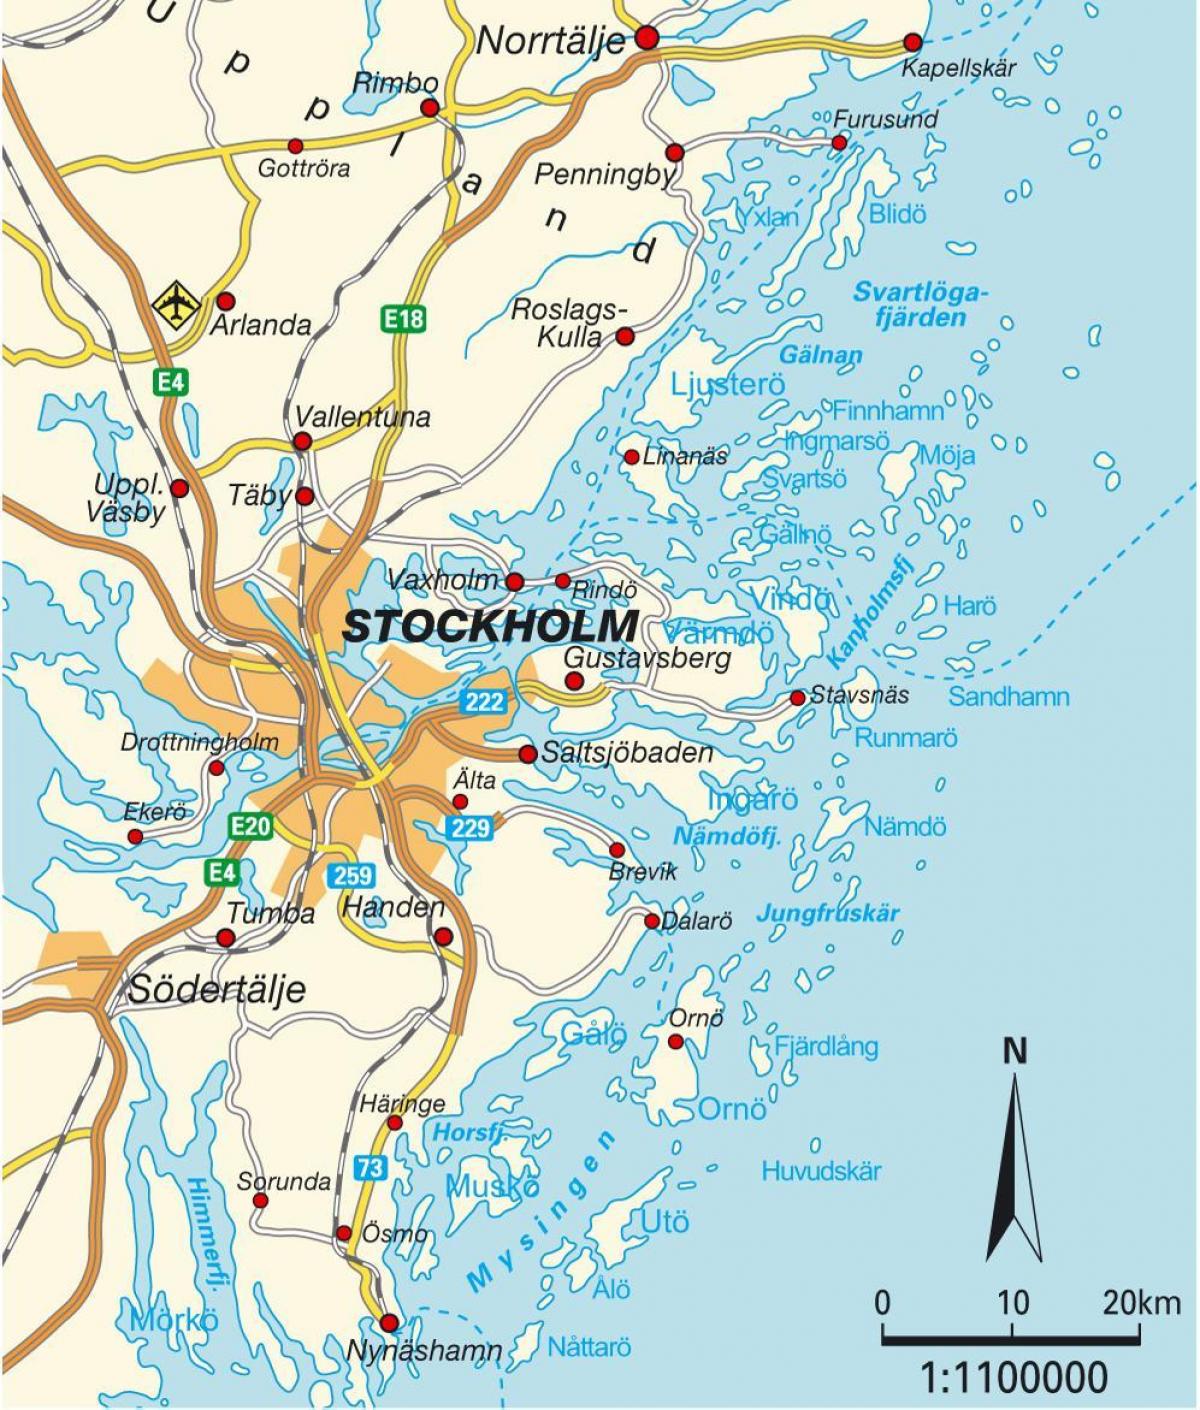 Stokholm në hartë